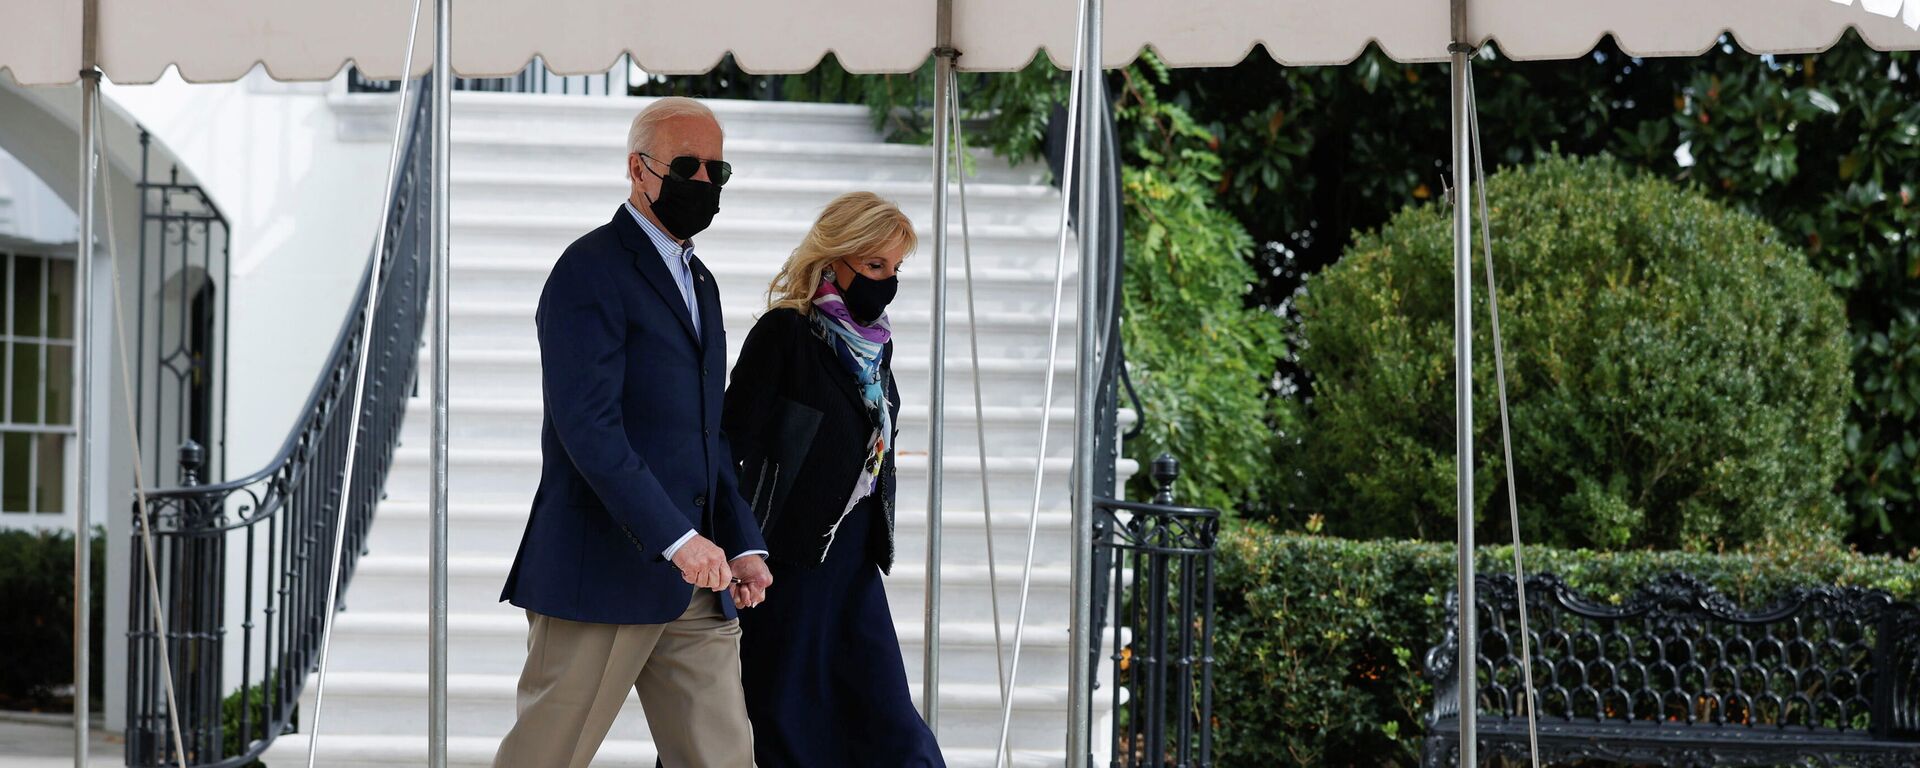 El presidente de Estados Unidos, Joe Biden, camina con la primera dama Jill Biden antes de viajar a Italia, en Washington, Estados Unidos, el 28 de octubre de 2021 - Sputnik Mundo, 1920, 29.10.2021